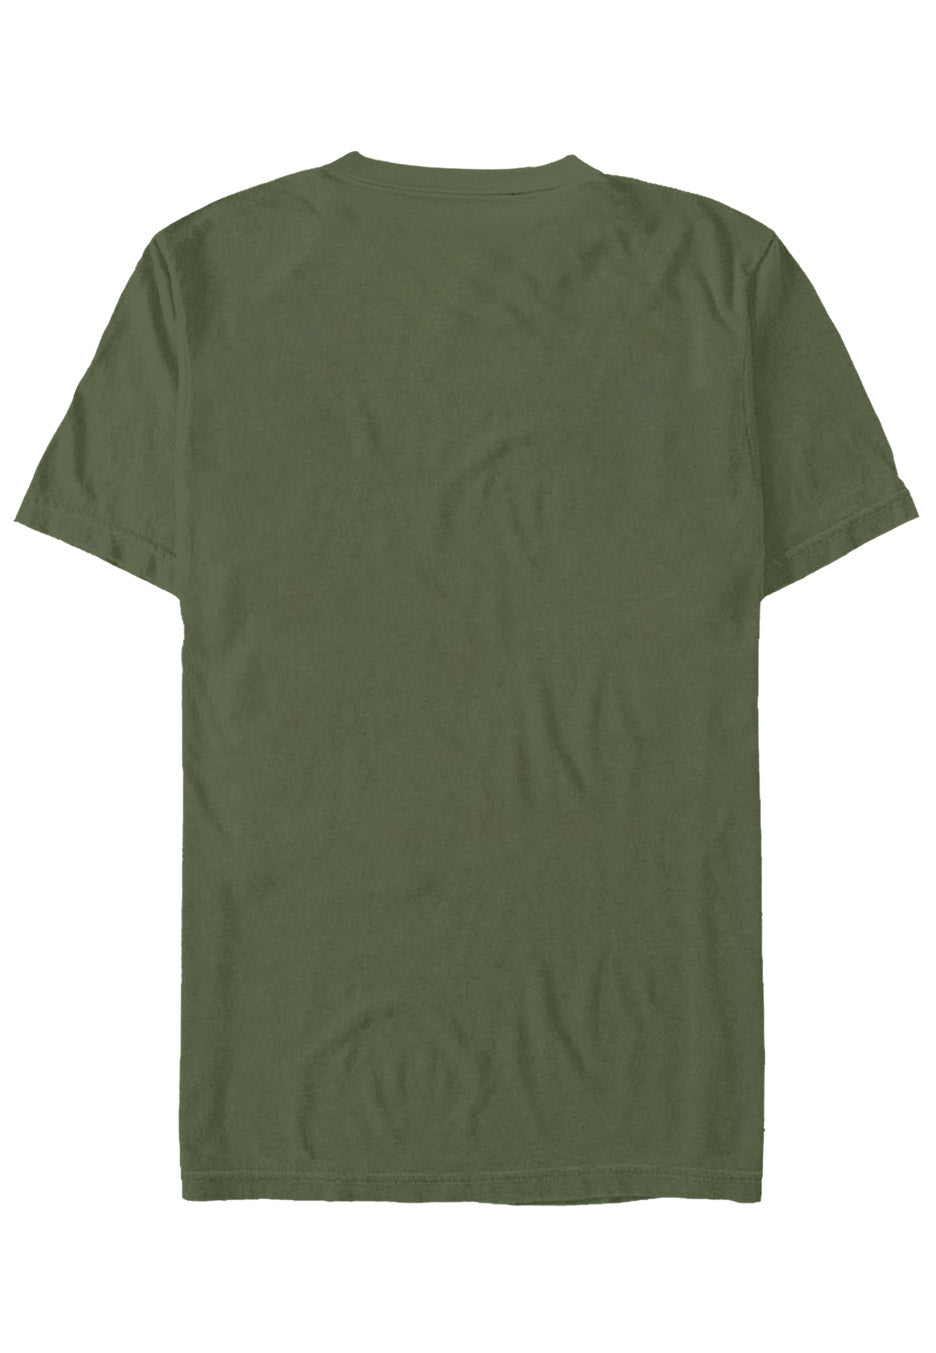 Thy Art Is Murder - Logo Military Green - T-Shirt